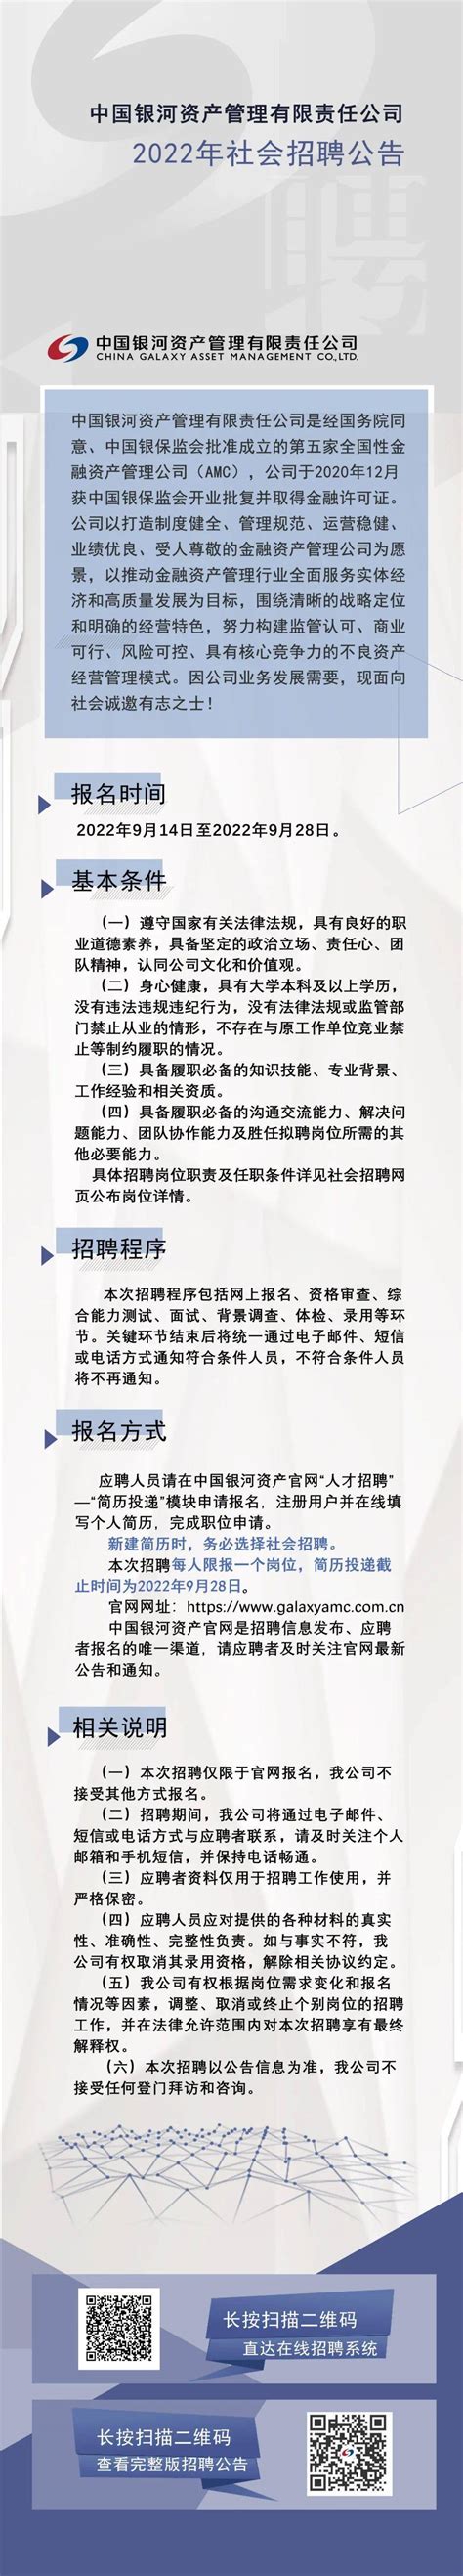 社招 | 中国银河资产管理有限责任公司2022年社会招聘_信息_交流_简历